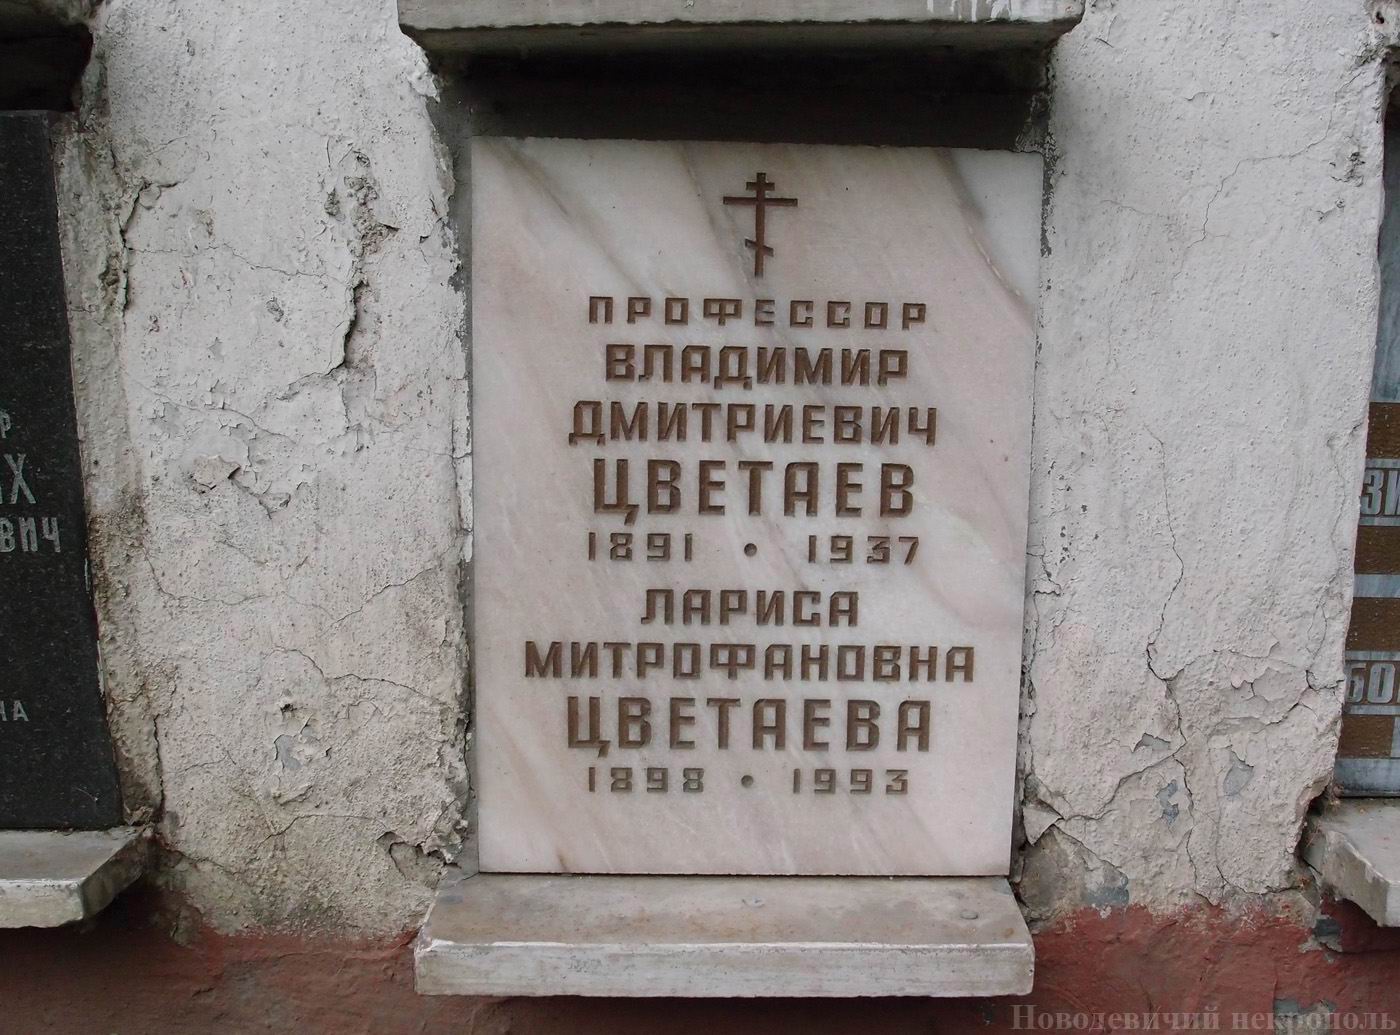 Плита на нише Цветаева В.Д. (1891–1937), на Новодевичьем кладбище (колумбарий [38]–4–4).